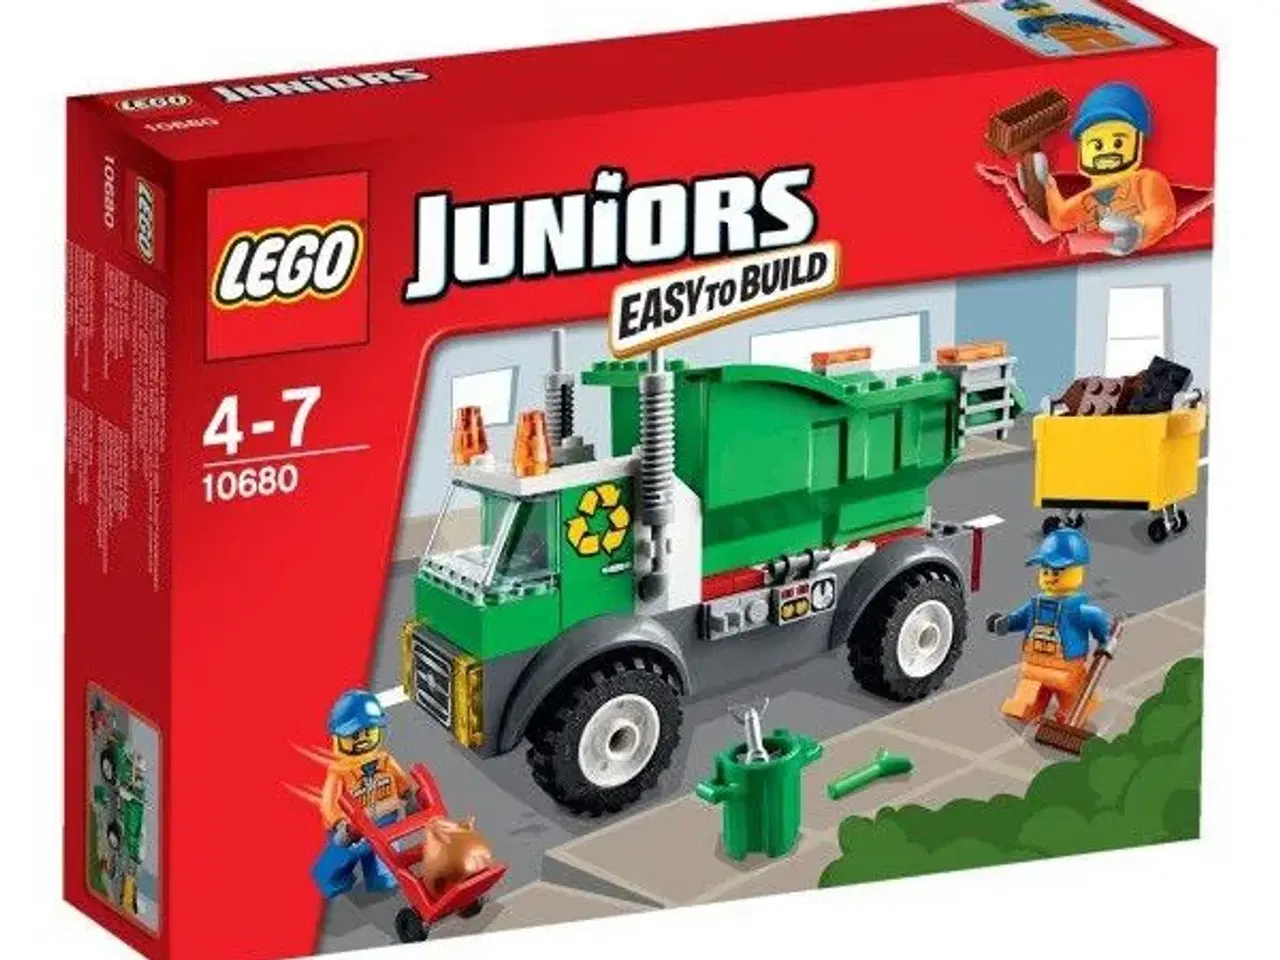 Billede 1 - Lego Juniors skraldebil -10680